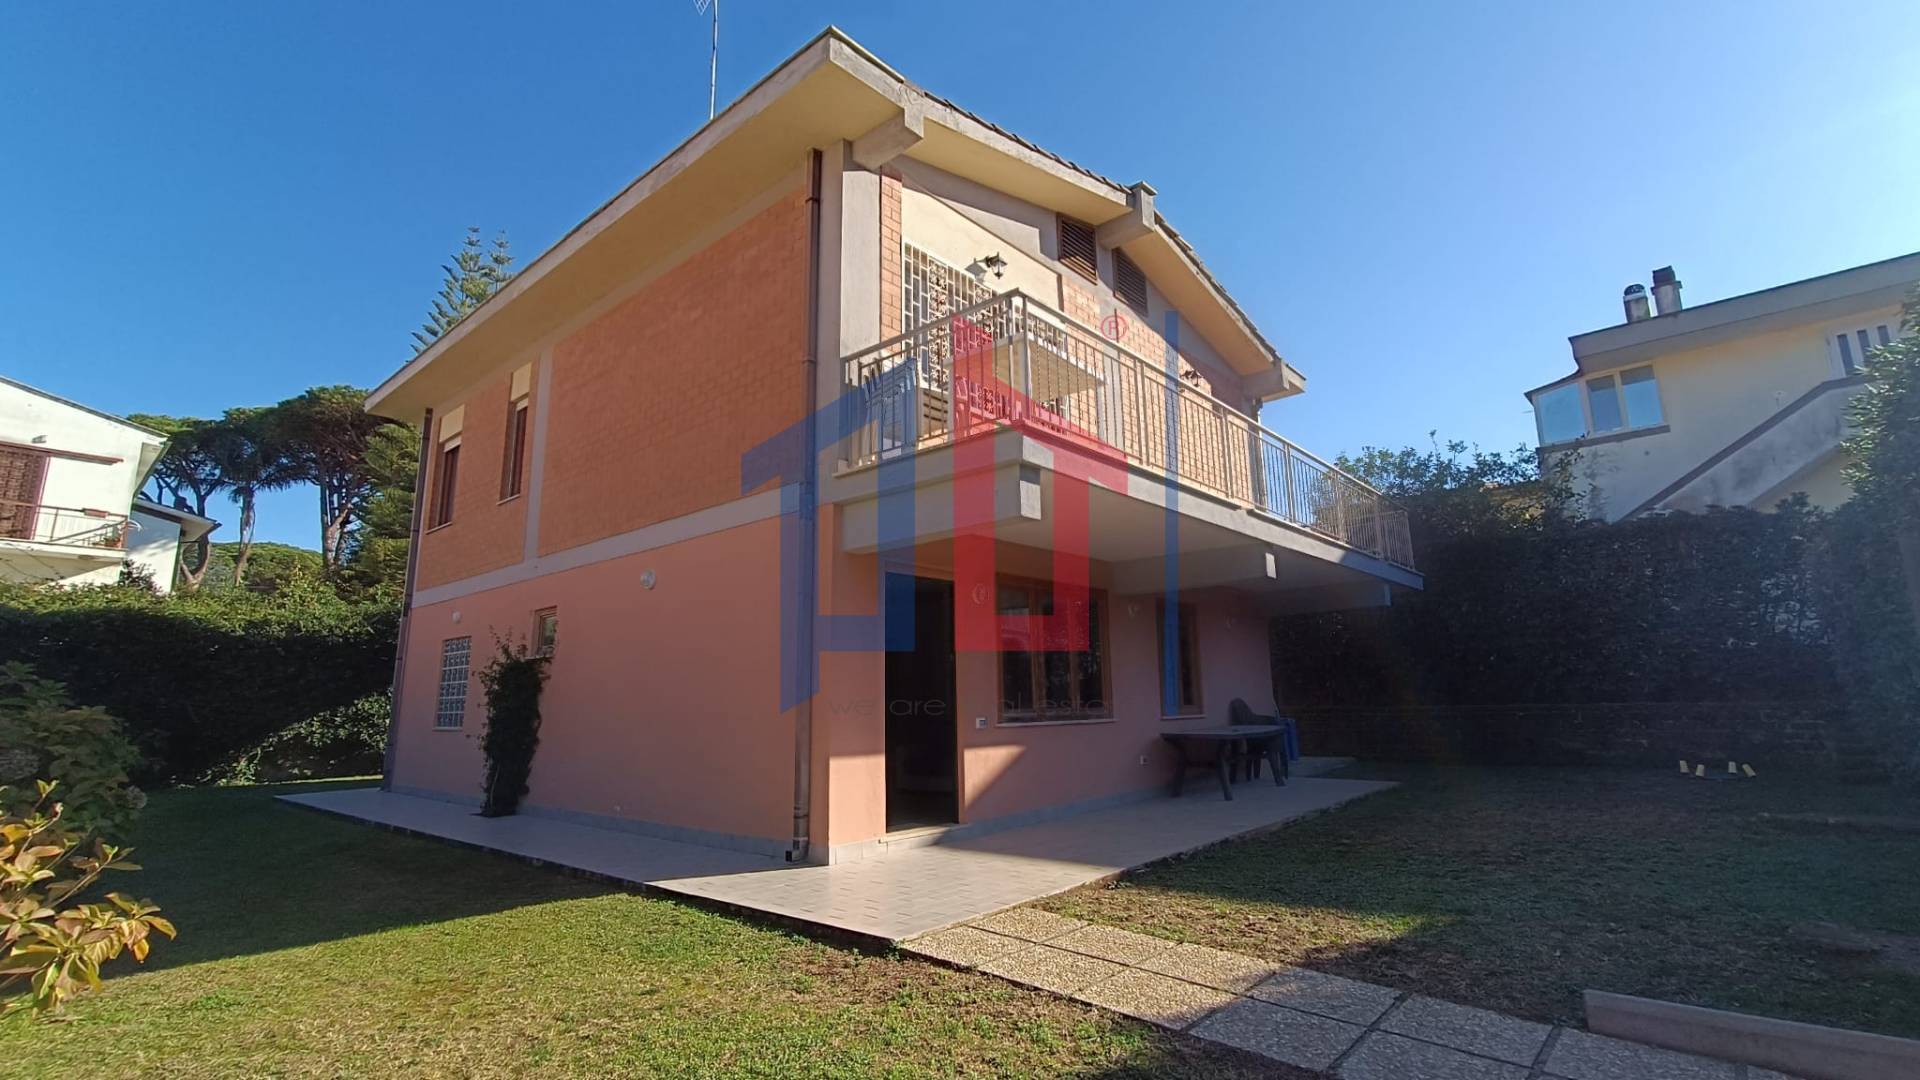 Villa in affitto a Anzio, 8 locali, zona Località: LavinioLidodiEnea, prezzo € 800 | PortaleAgenzieImmobiliari.it